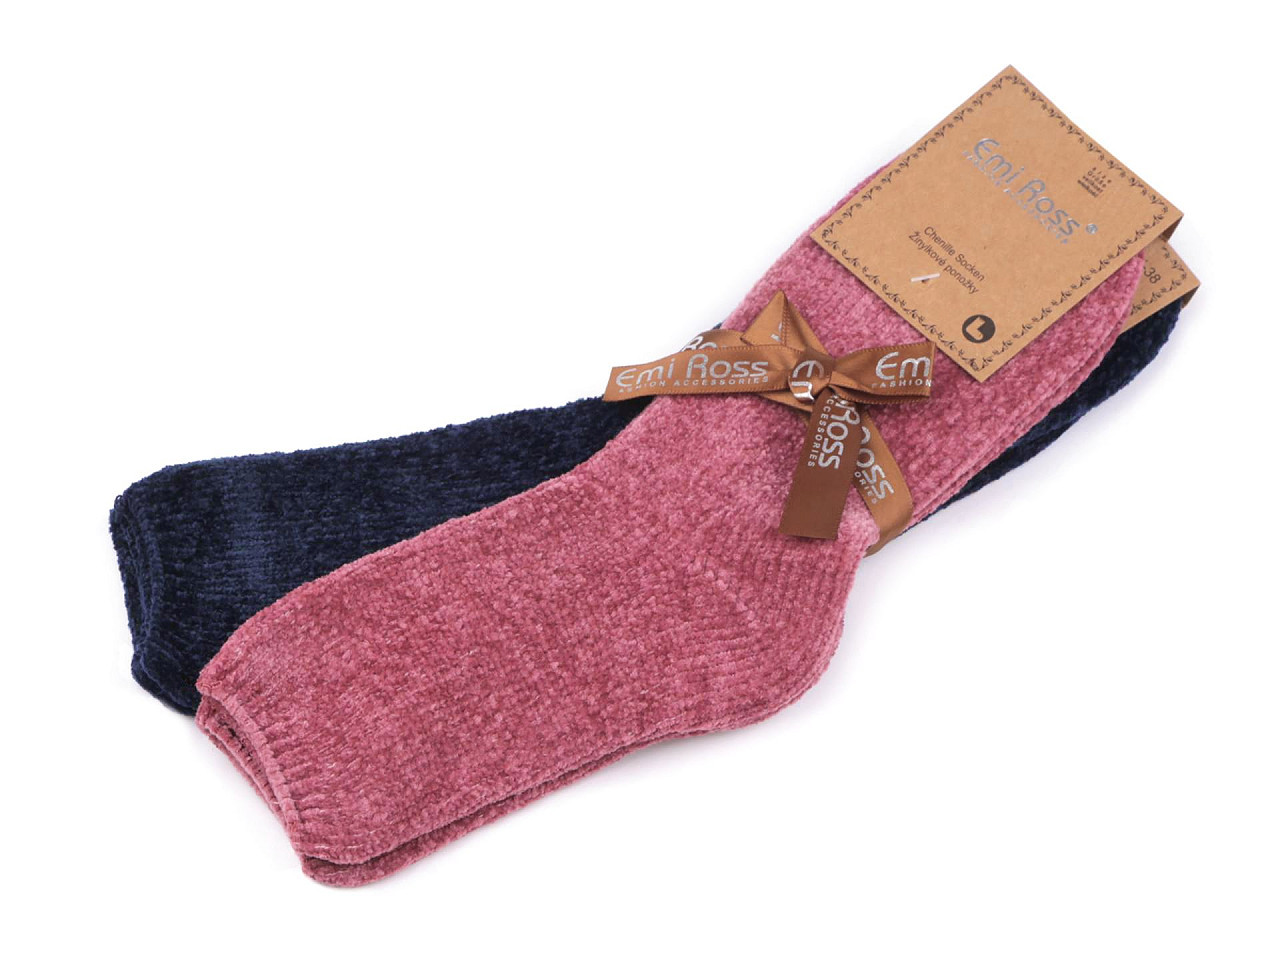 Dámské žinylkové ponožky Emi Ross, barva 27 (vel. 39-42) mix